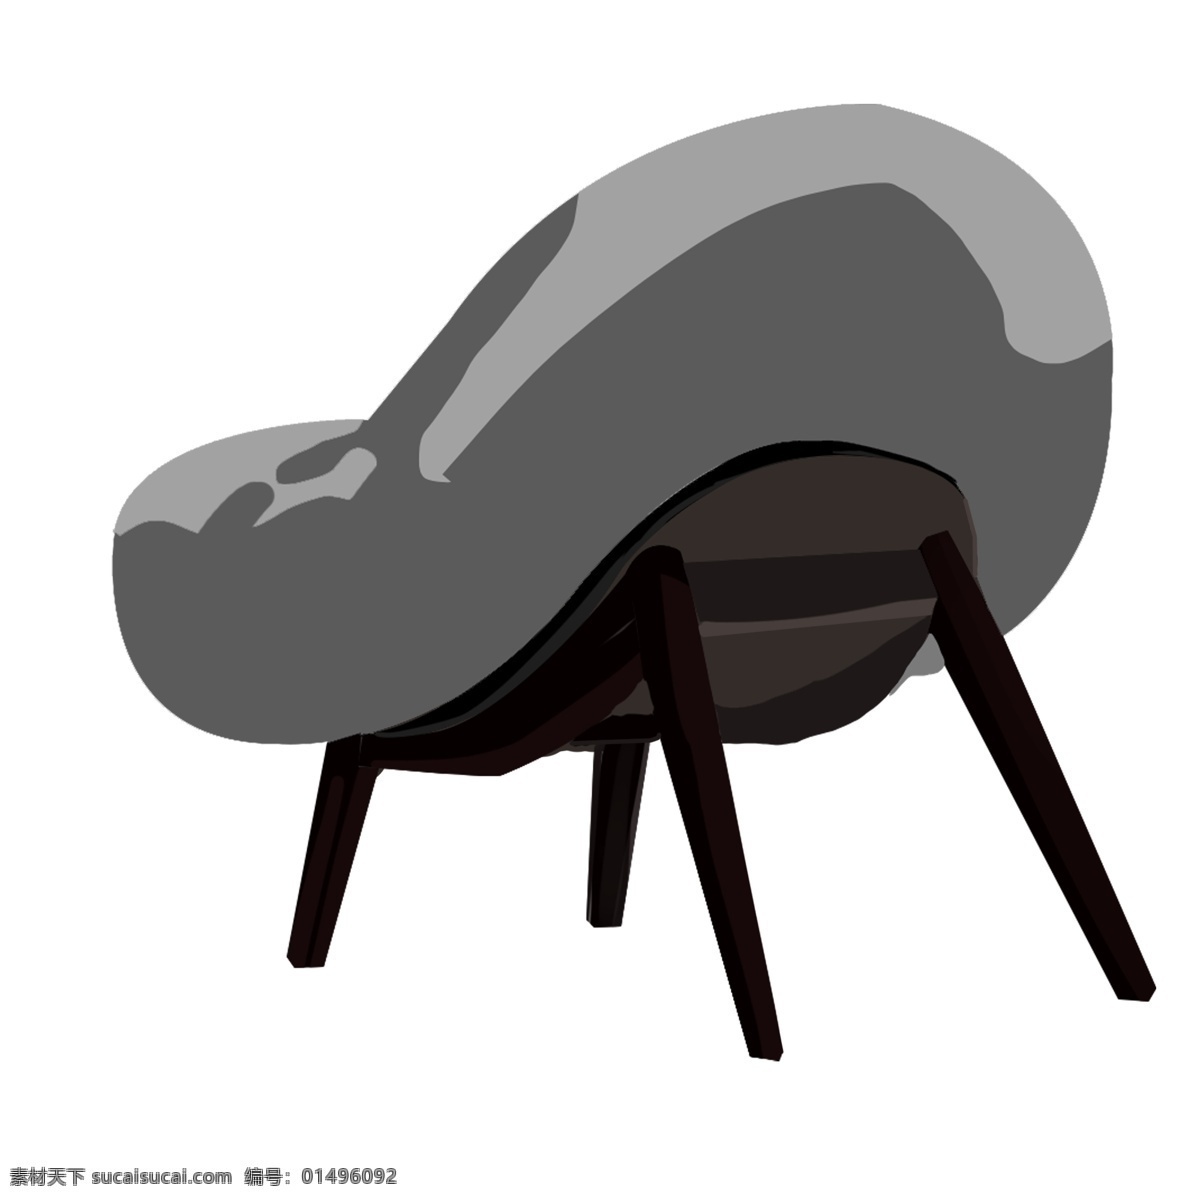 豪华 椅子 装饰 插画 豪华椅子 灰色的椅子 漂亮的椅子 创意椅子 立体椅子 卡通椅子 家具椅子